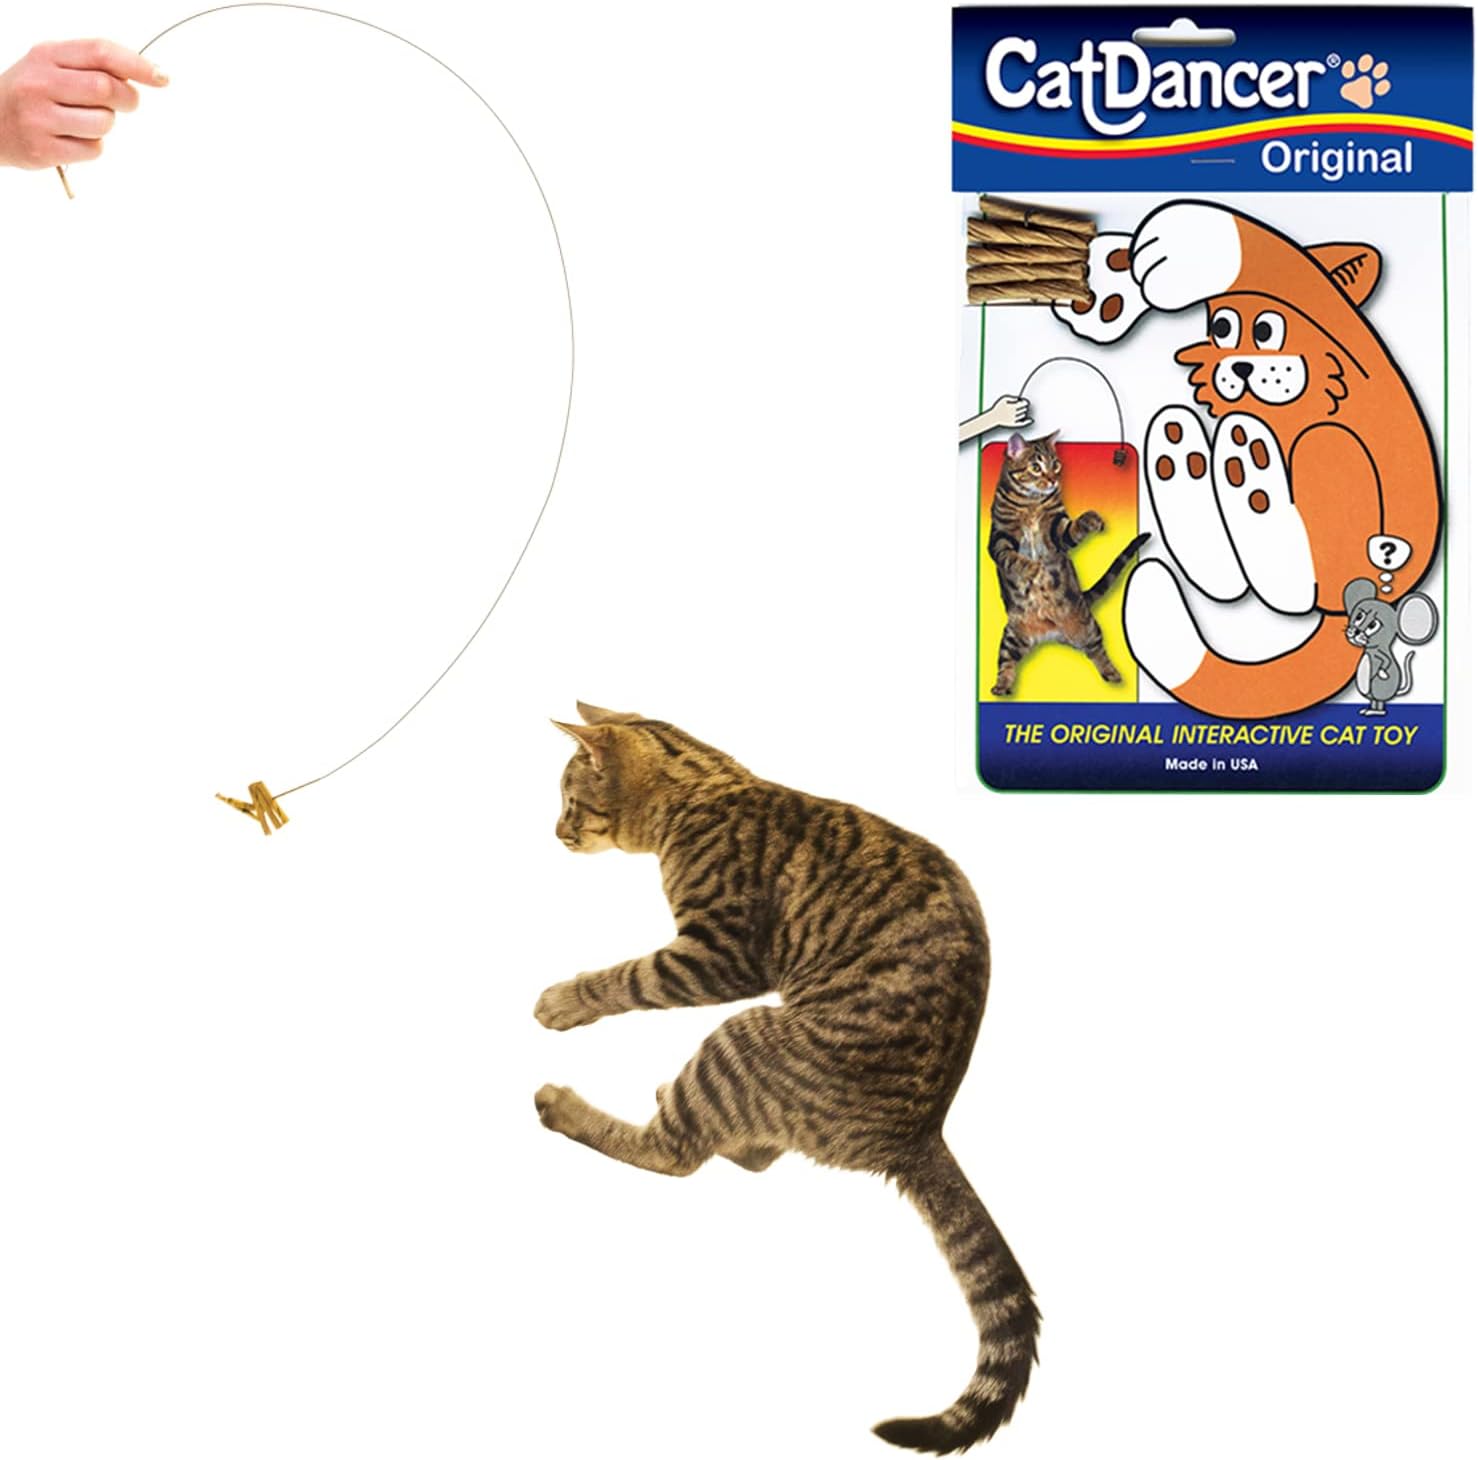 Cat Dancer toy